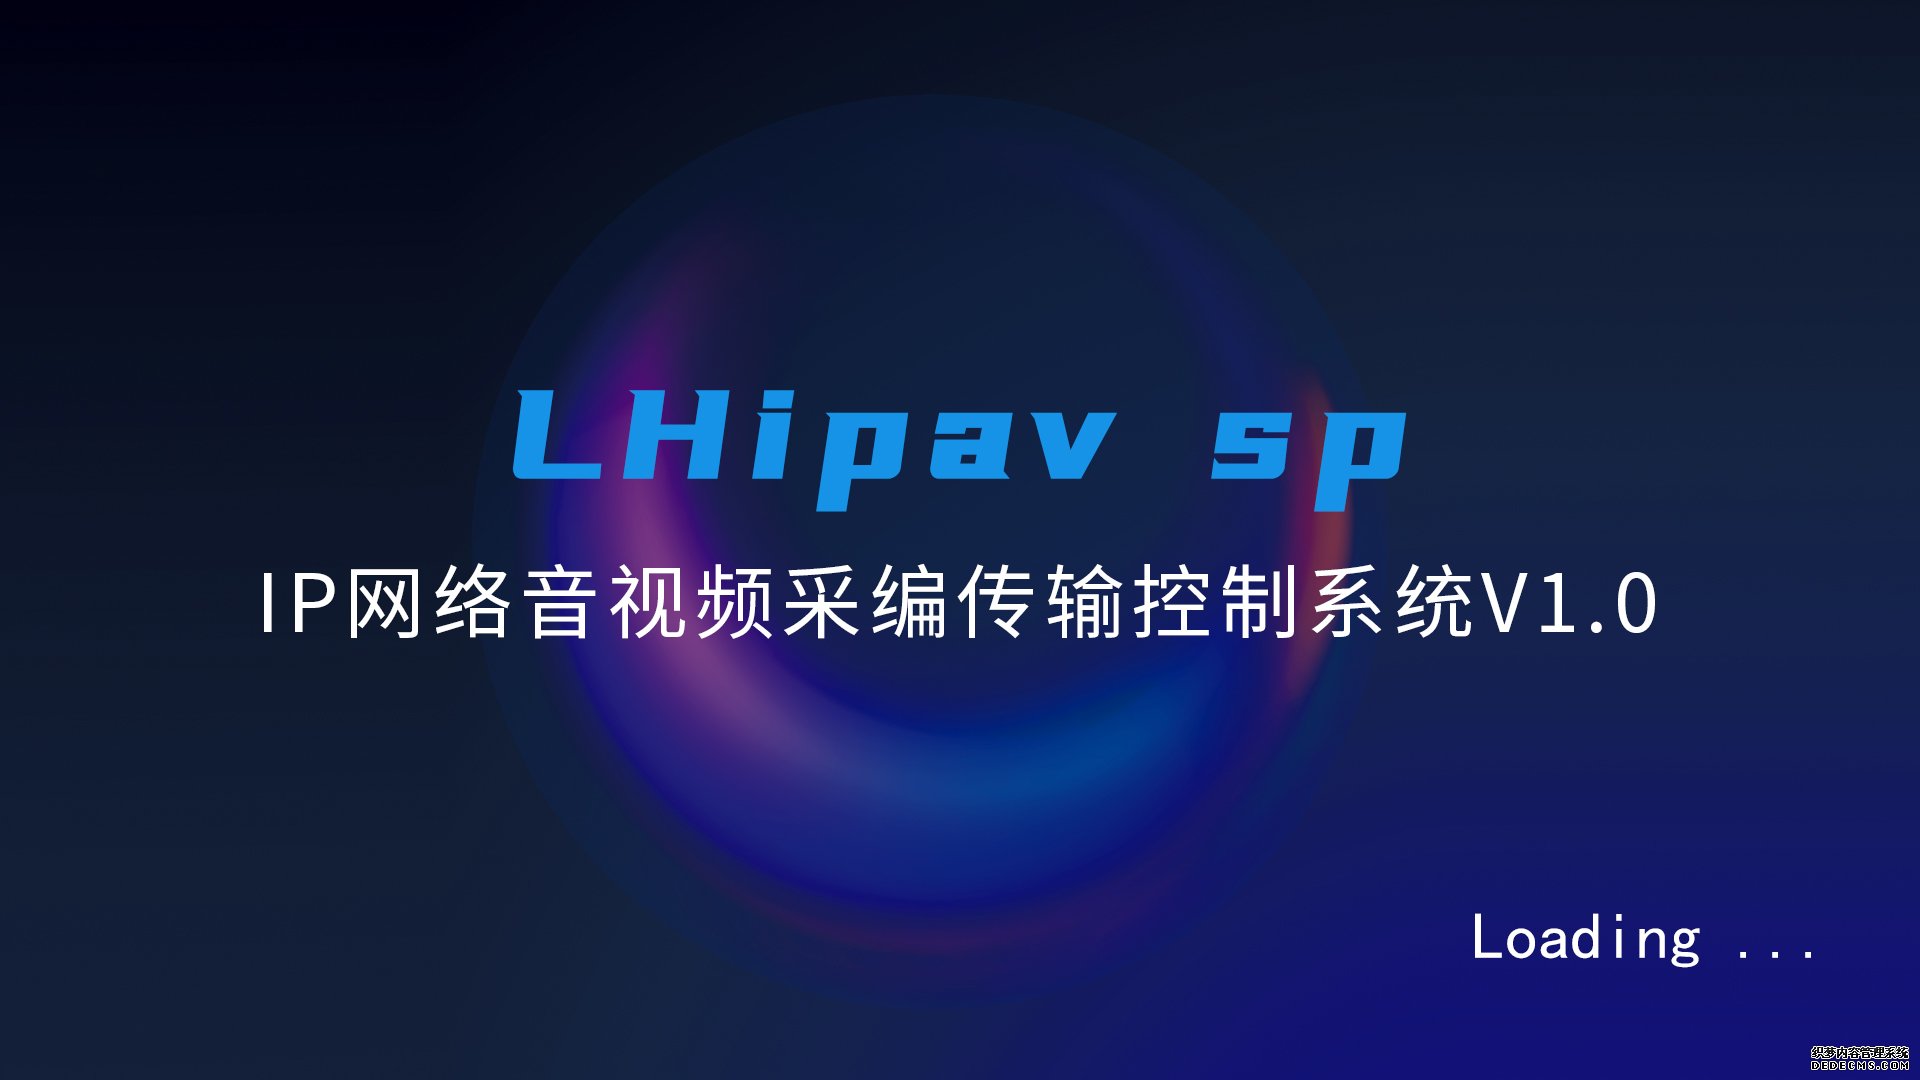 IP网络音视频采编传输控制系统 LHipavsp数